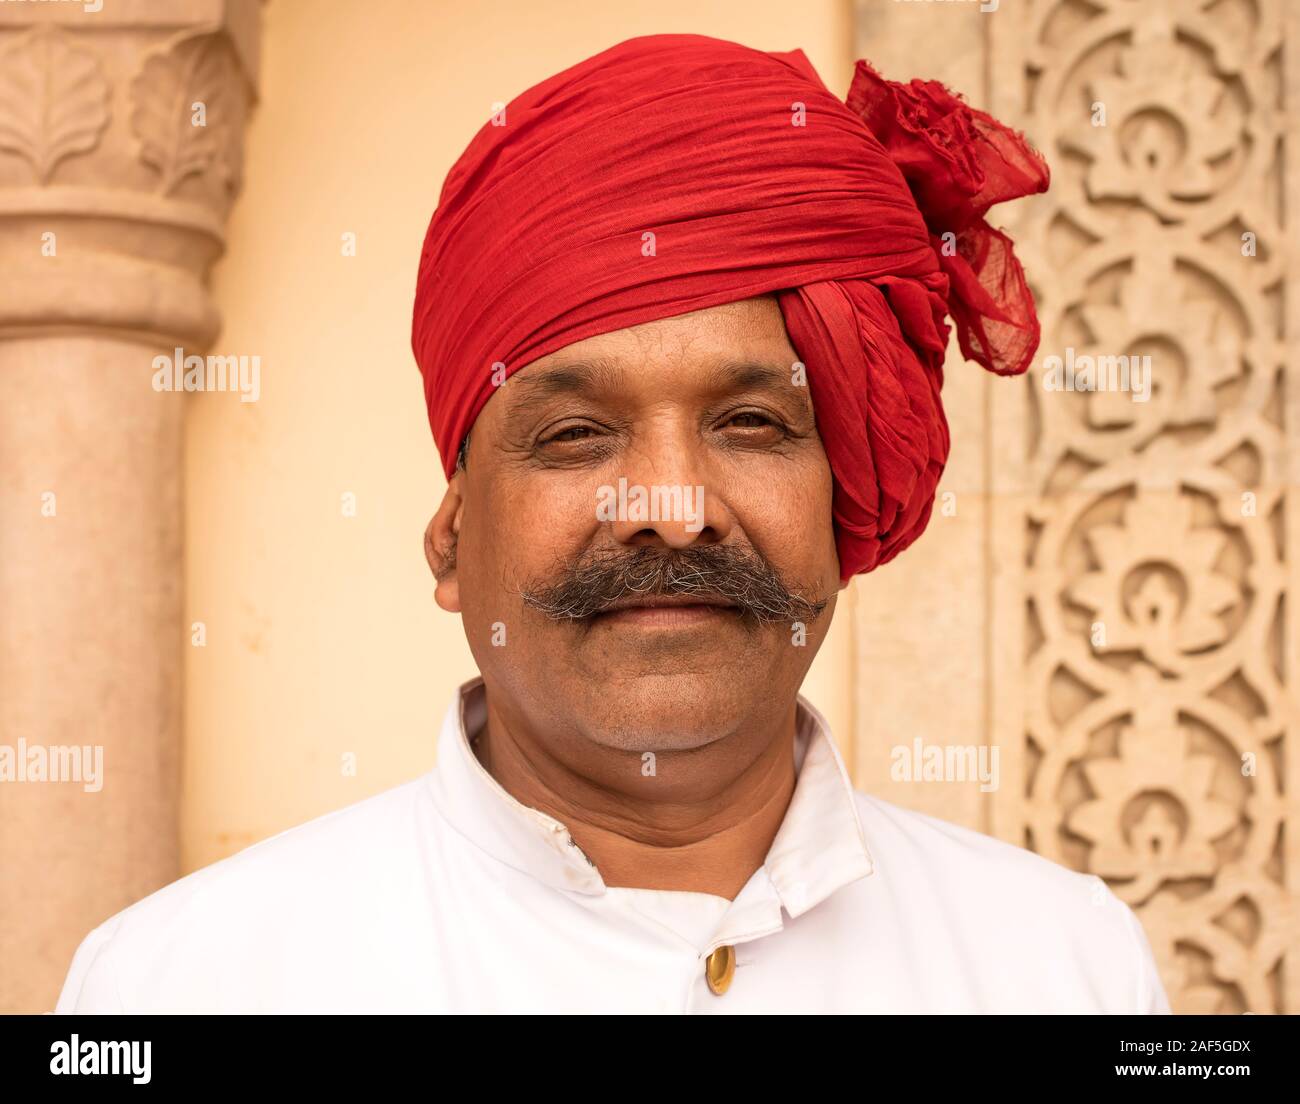 Uomo con turbante rosso, Jaipur, Rajasthan, India Foto Stock